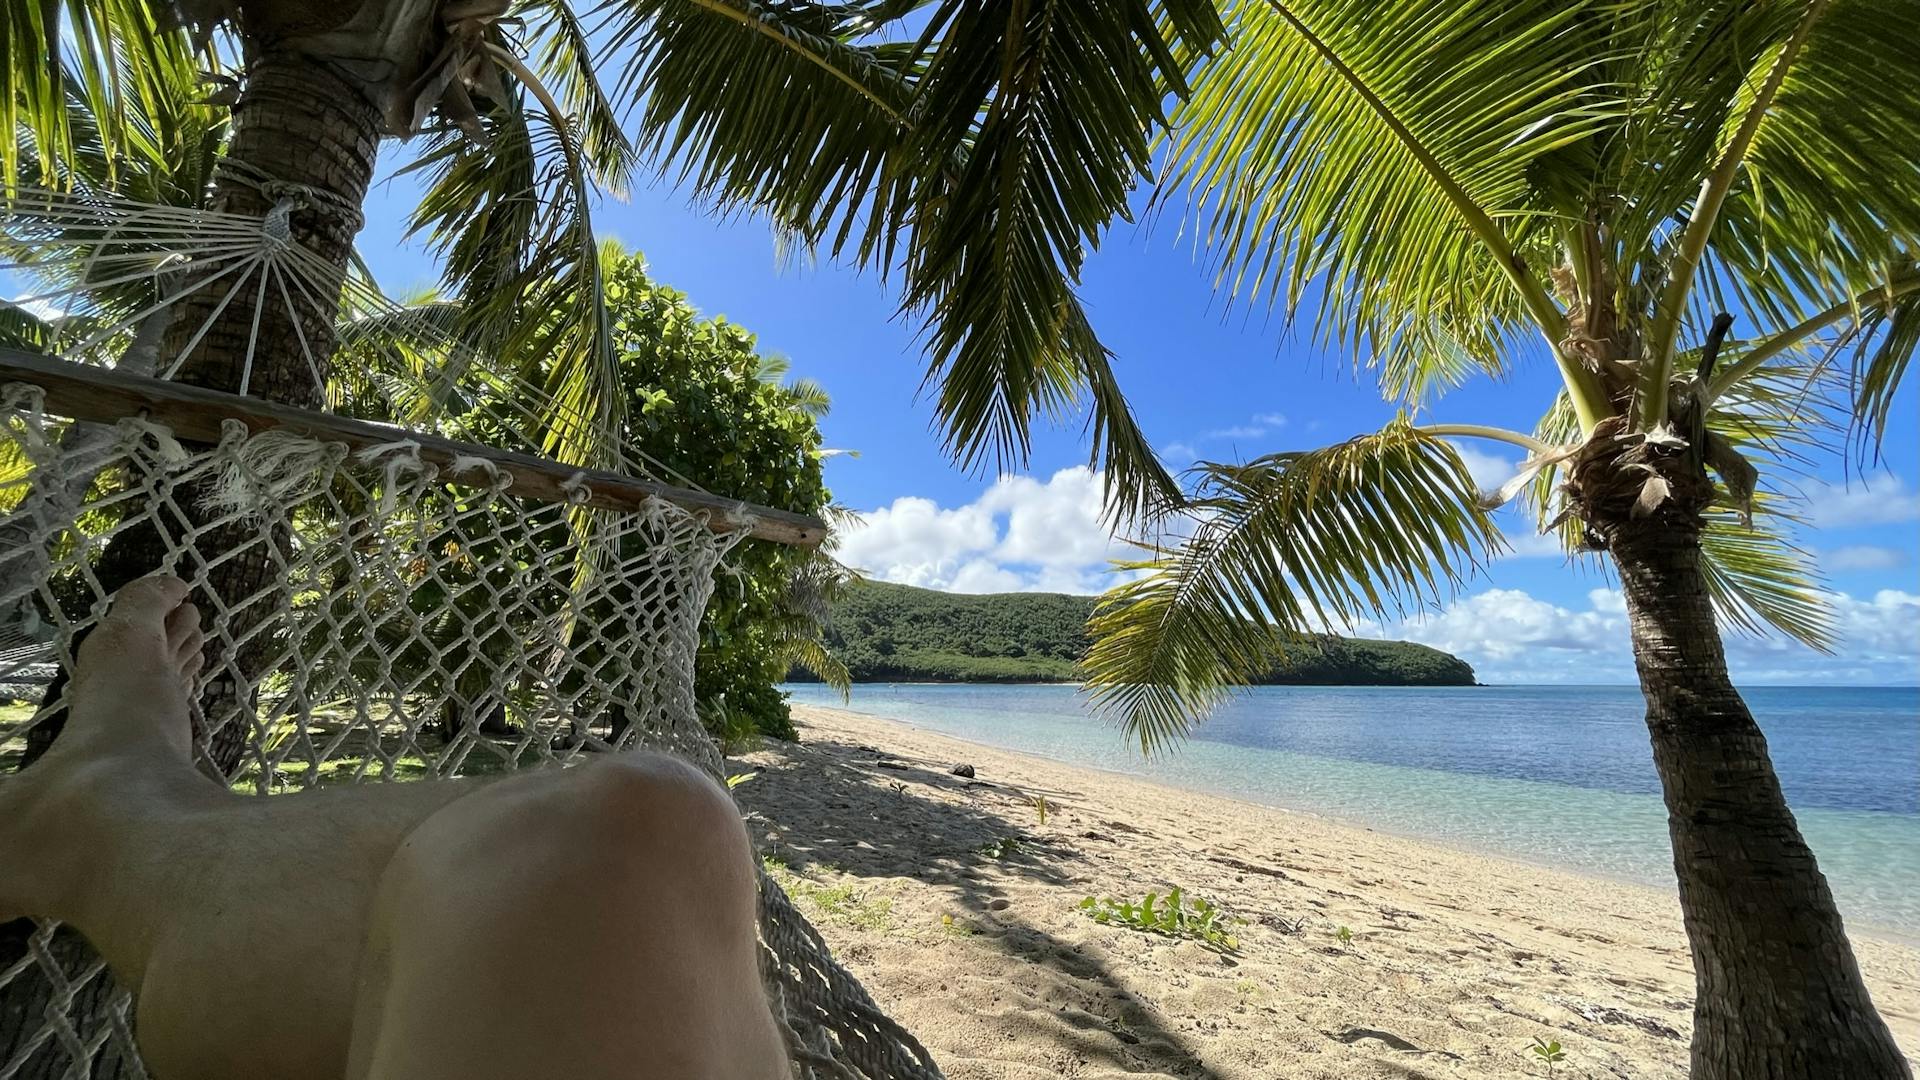 Sitting in a hammock on a Fijian island